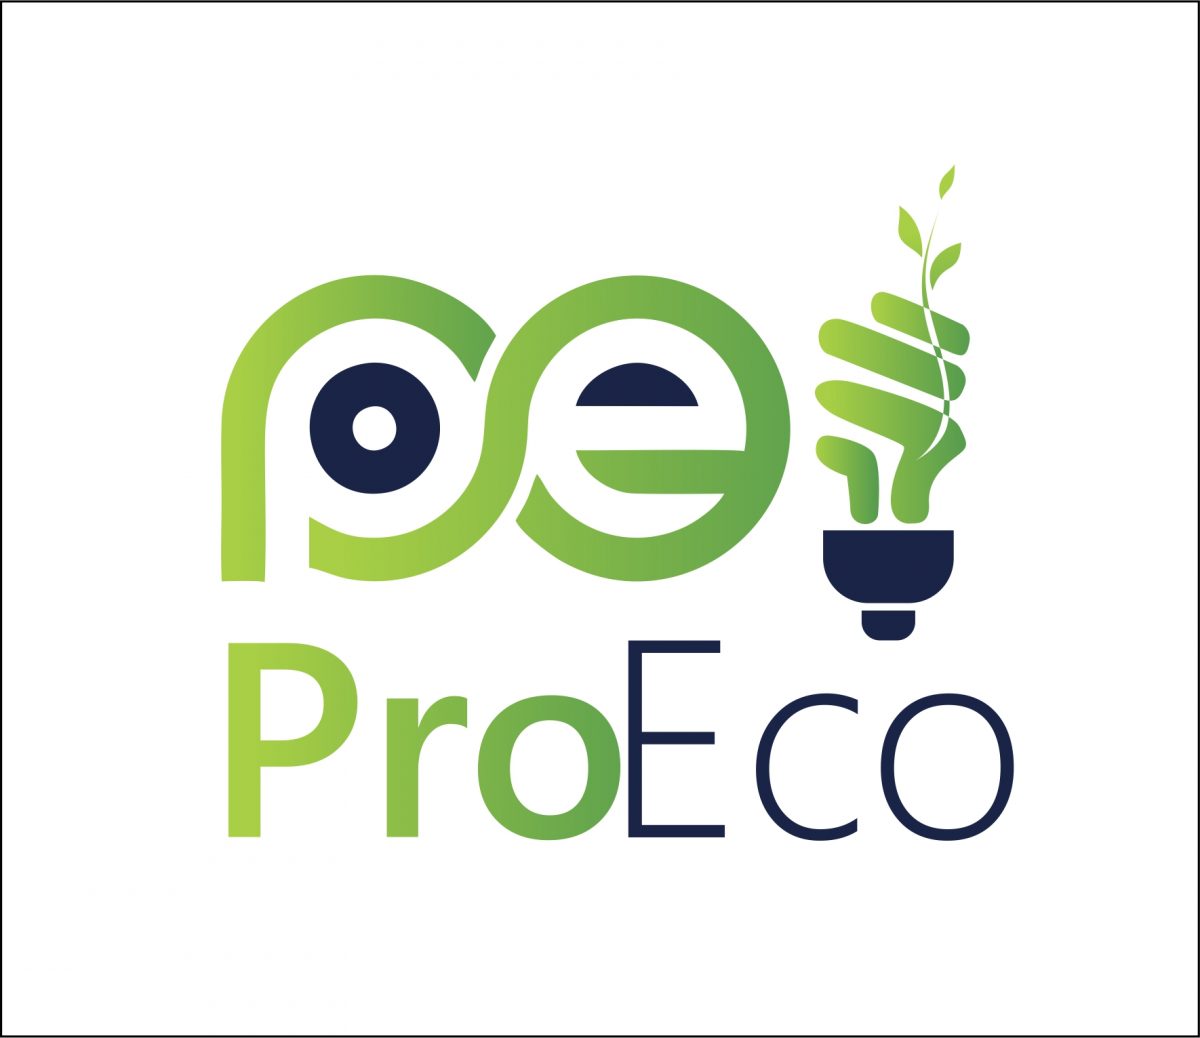 5-8 сынып оқушыларына арналған “ProEco” республикалық экологиялық жобалар конкурсы